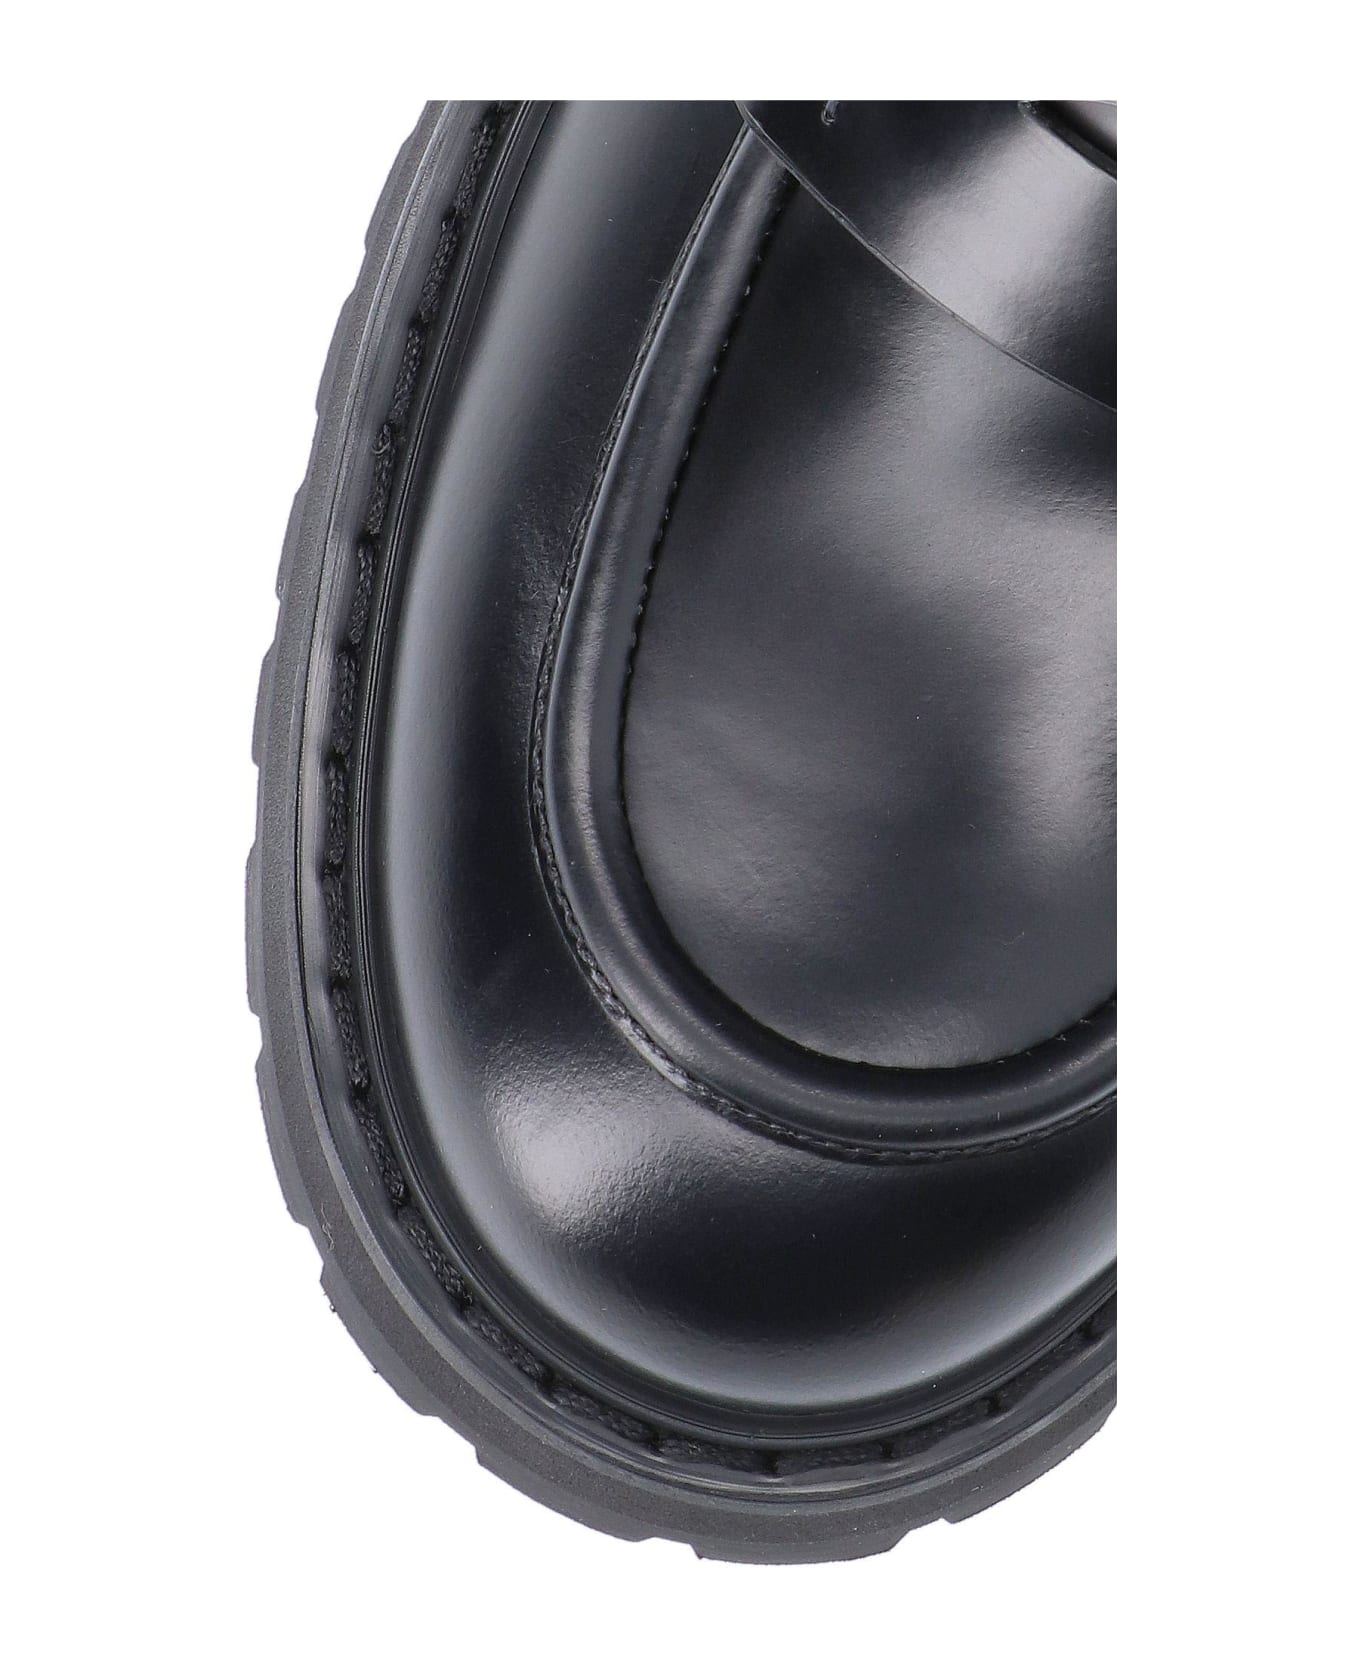 Premiata Leather Loafers - NERO